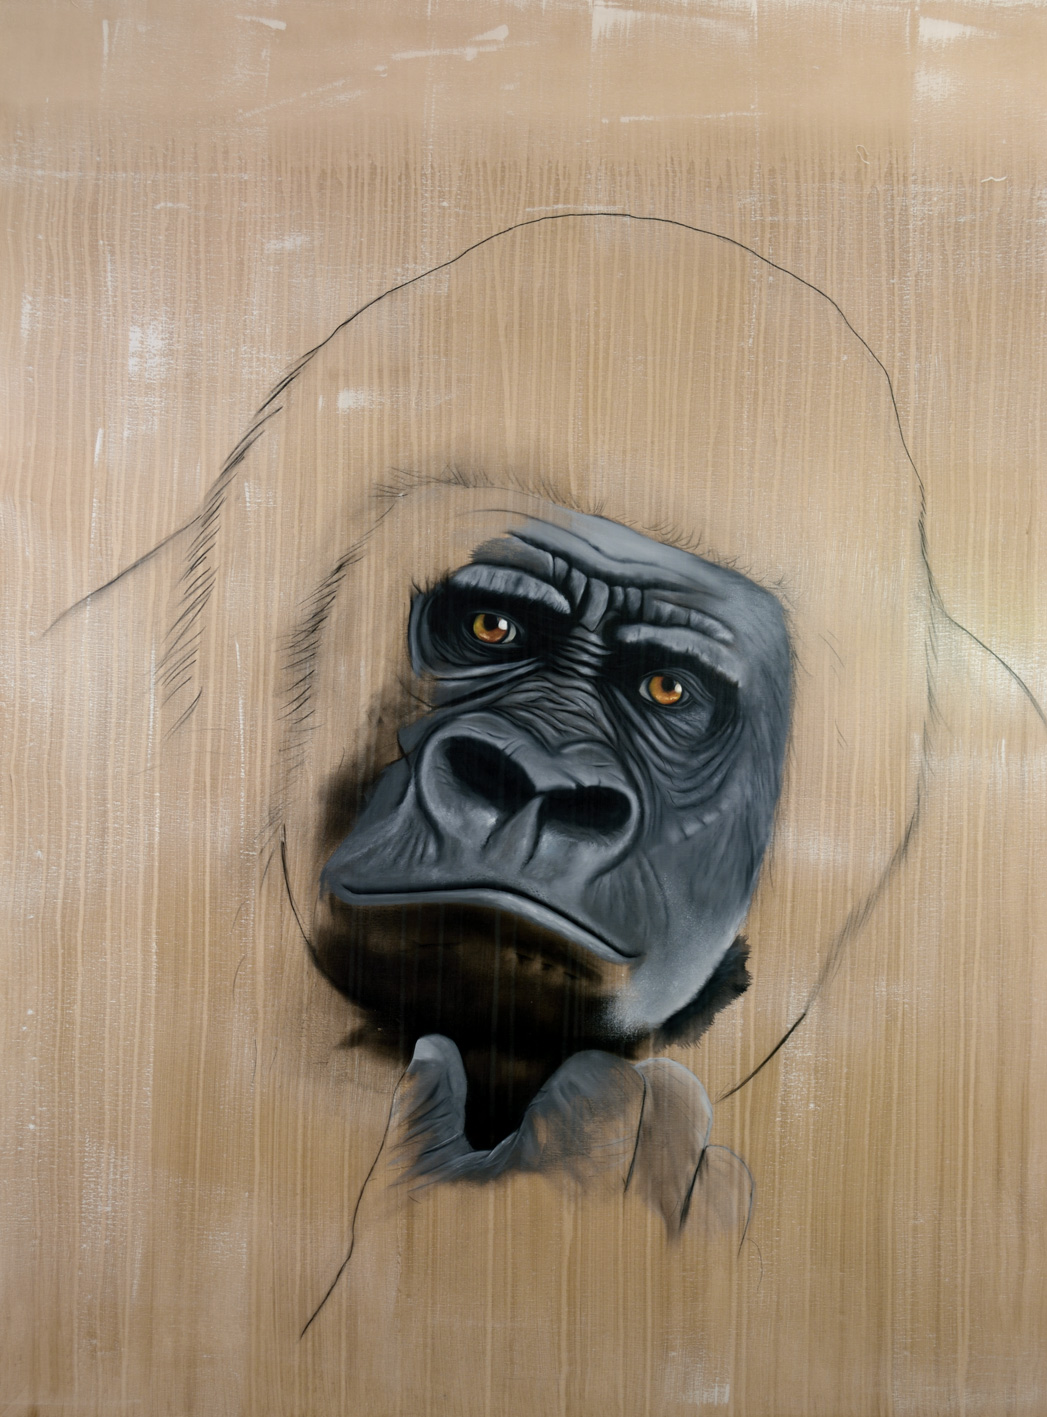 GORILLA-GORILLA gorilla-delete-threatened-endangered-extinction Thierry Bisch Contemporary painter animals painting art decoration nature biodiversity conservation